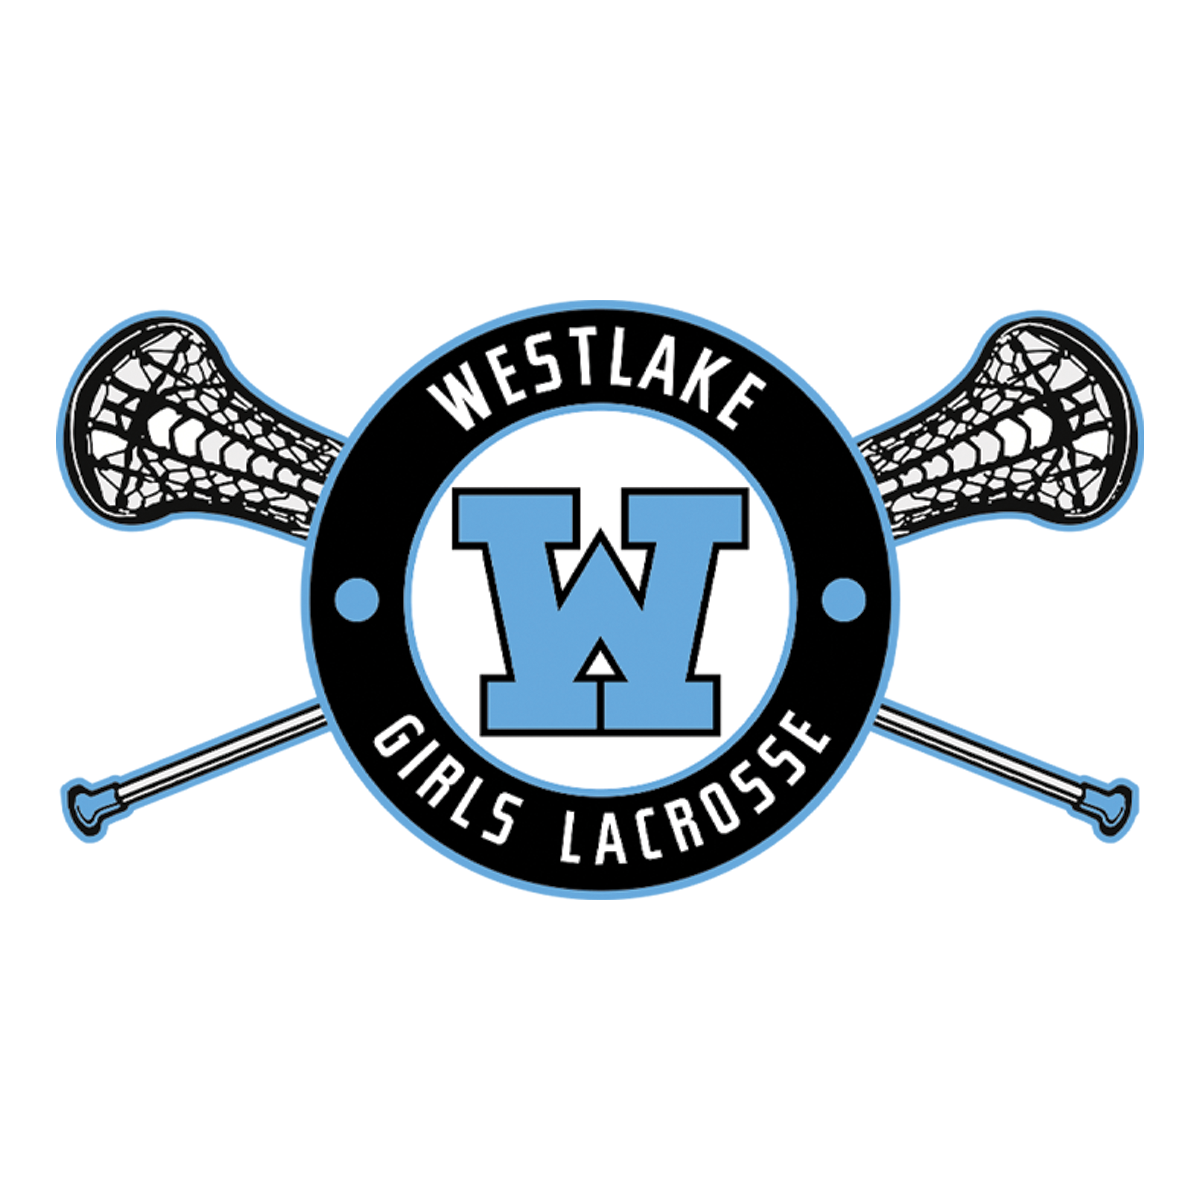 Westlake HS Girls Lacrosse Team Store